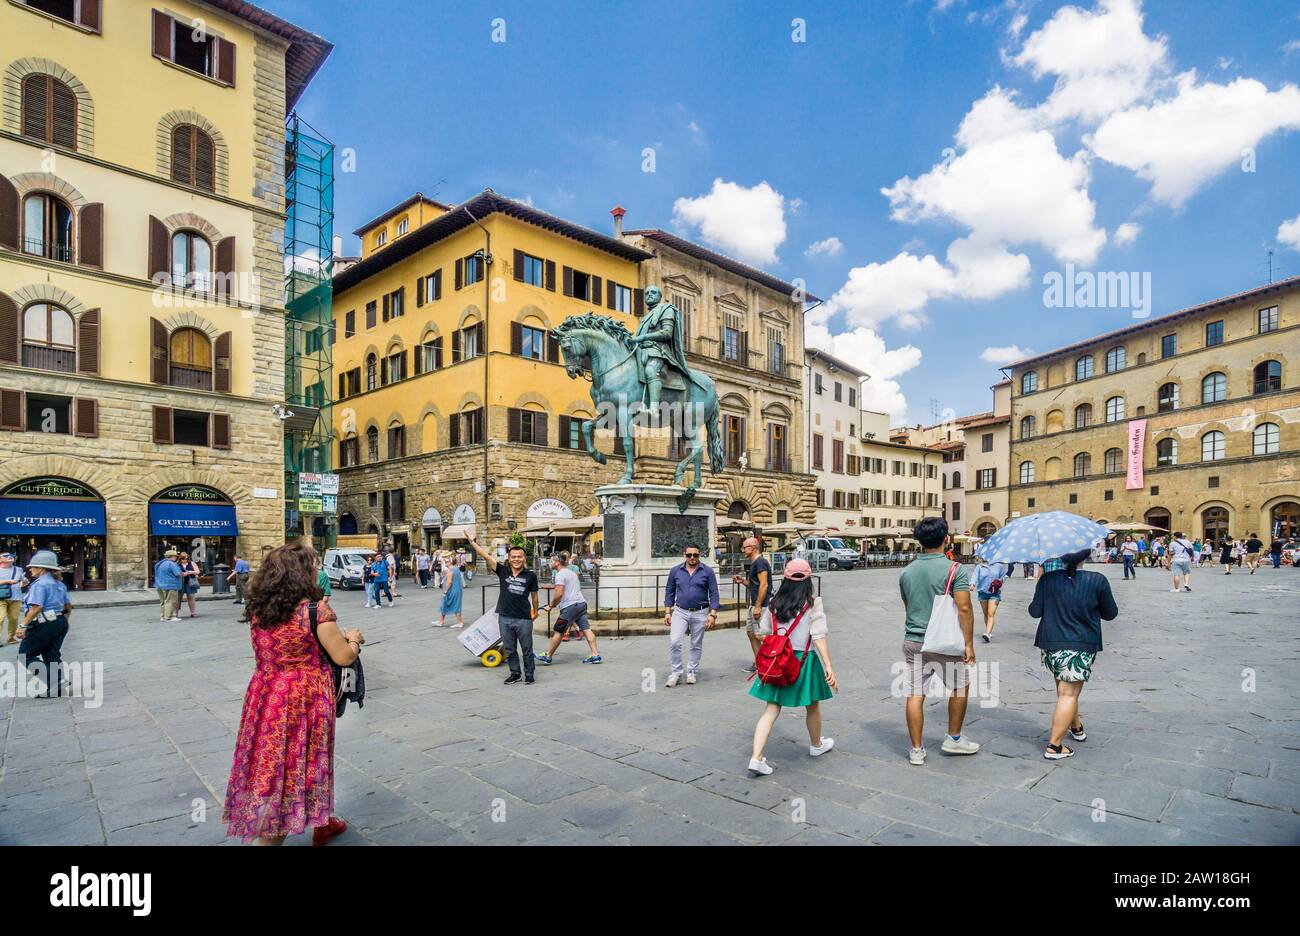 Equestrian statue of Cosimo I at Piazza della Signoria, Florence, Tuscany, Italy Stock Photo